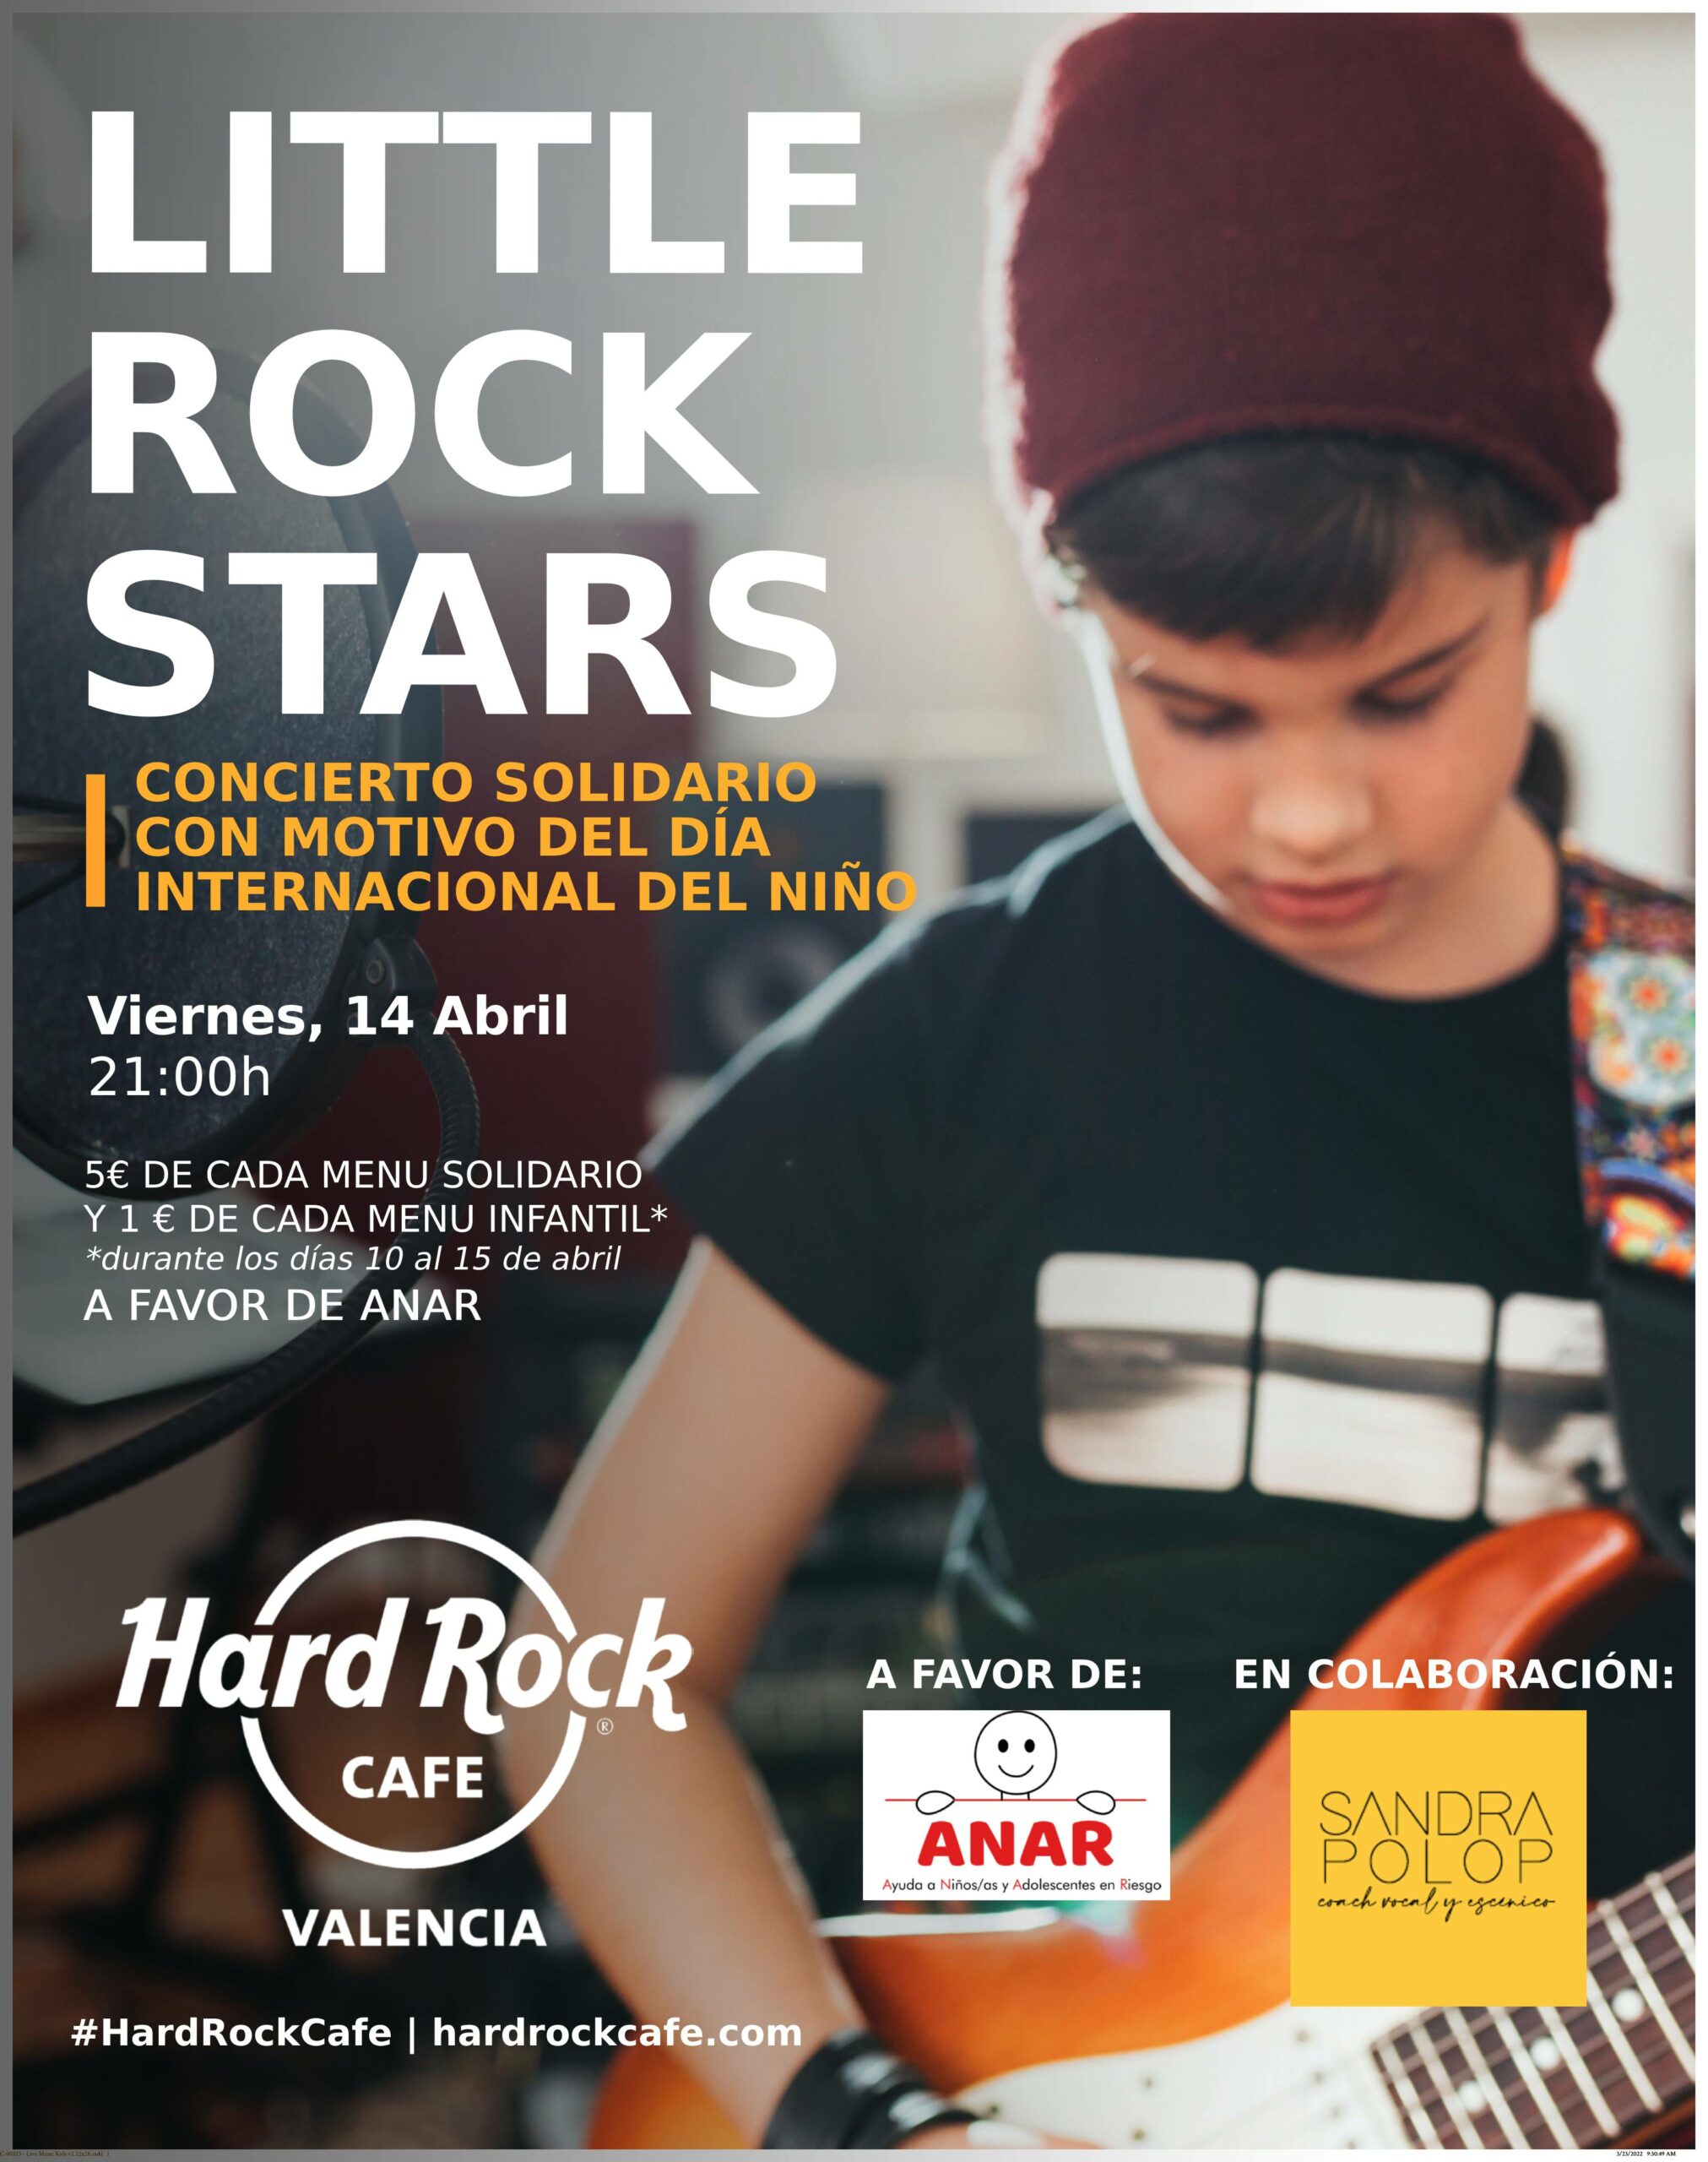 Hard Rock Cafe Valencia colabora con ANAR